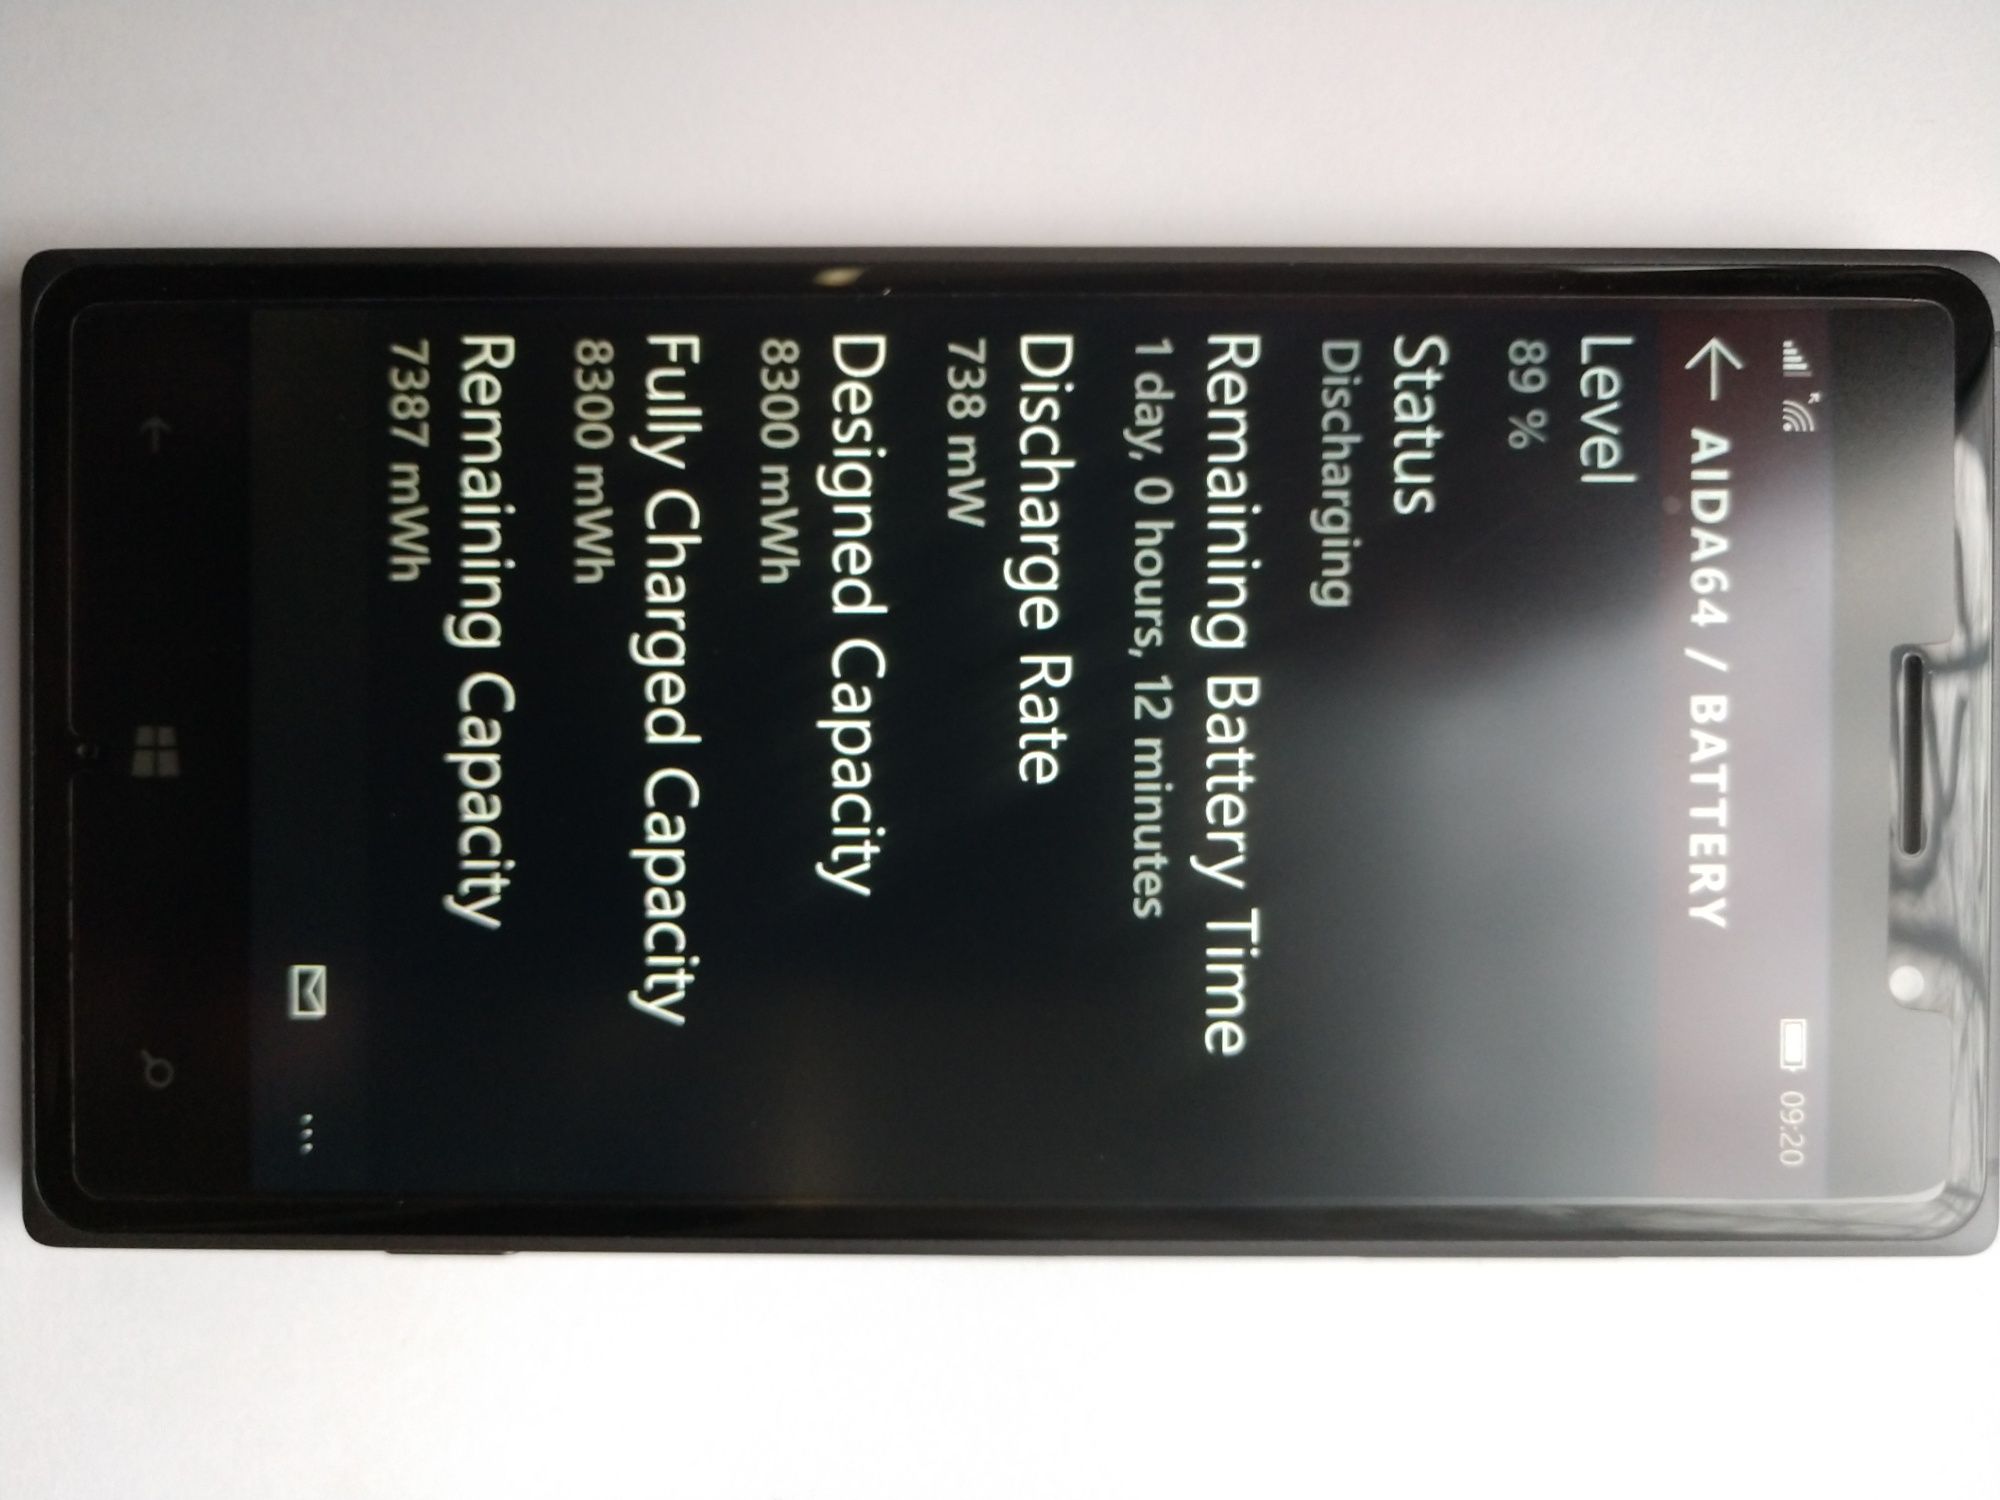 Nokia Lumia 830 Windows Mobile 10